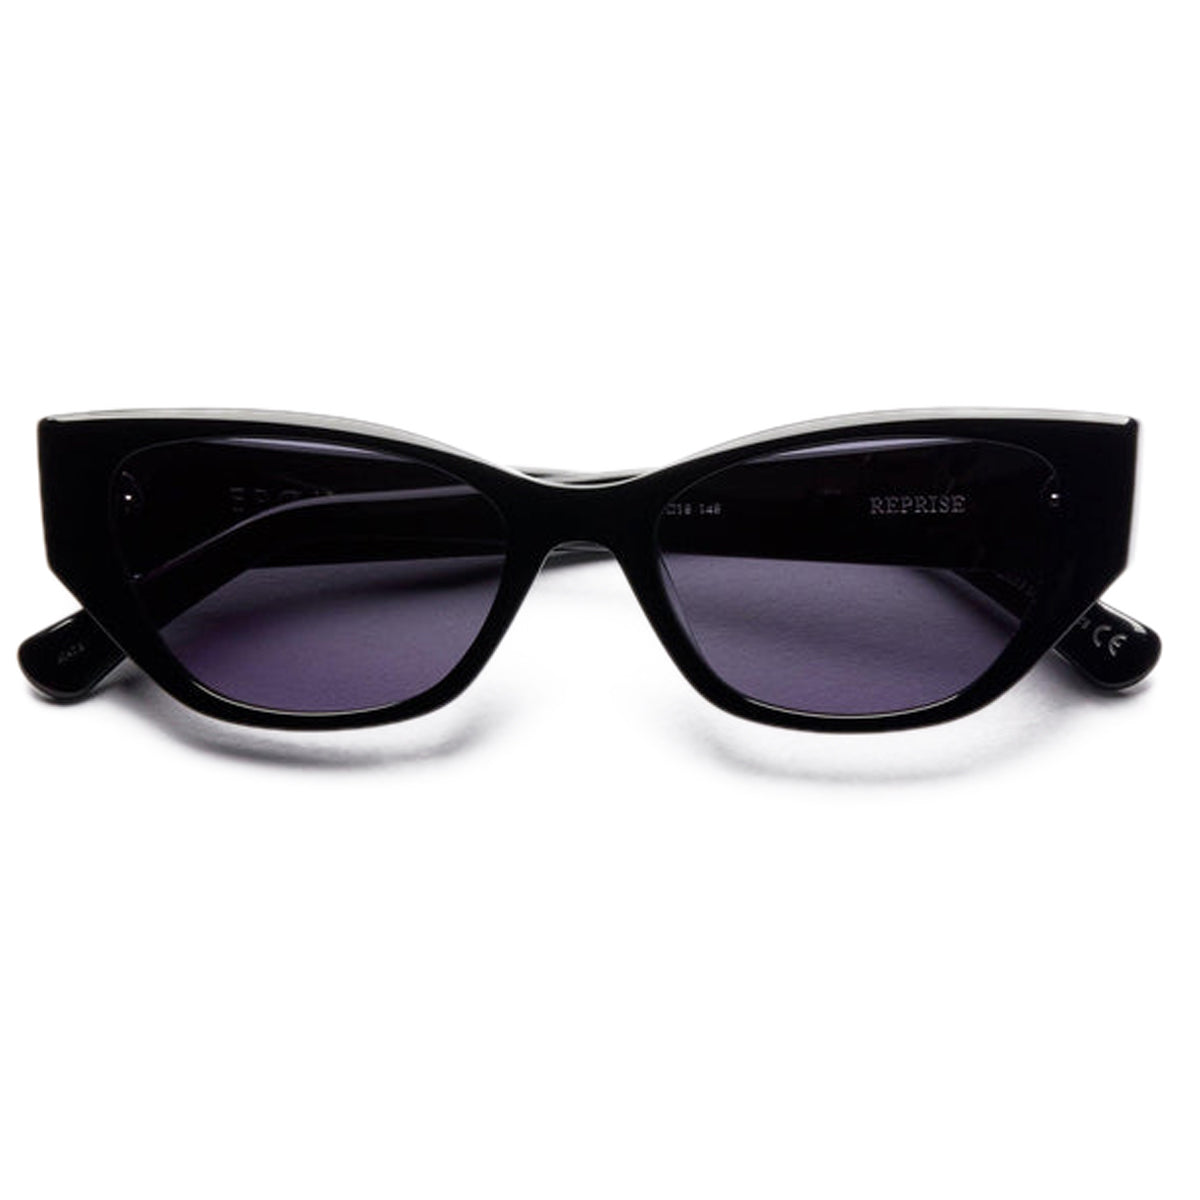 Epokhe Reprise Sunglasses - Black Polished/Black image 2